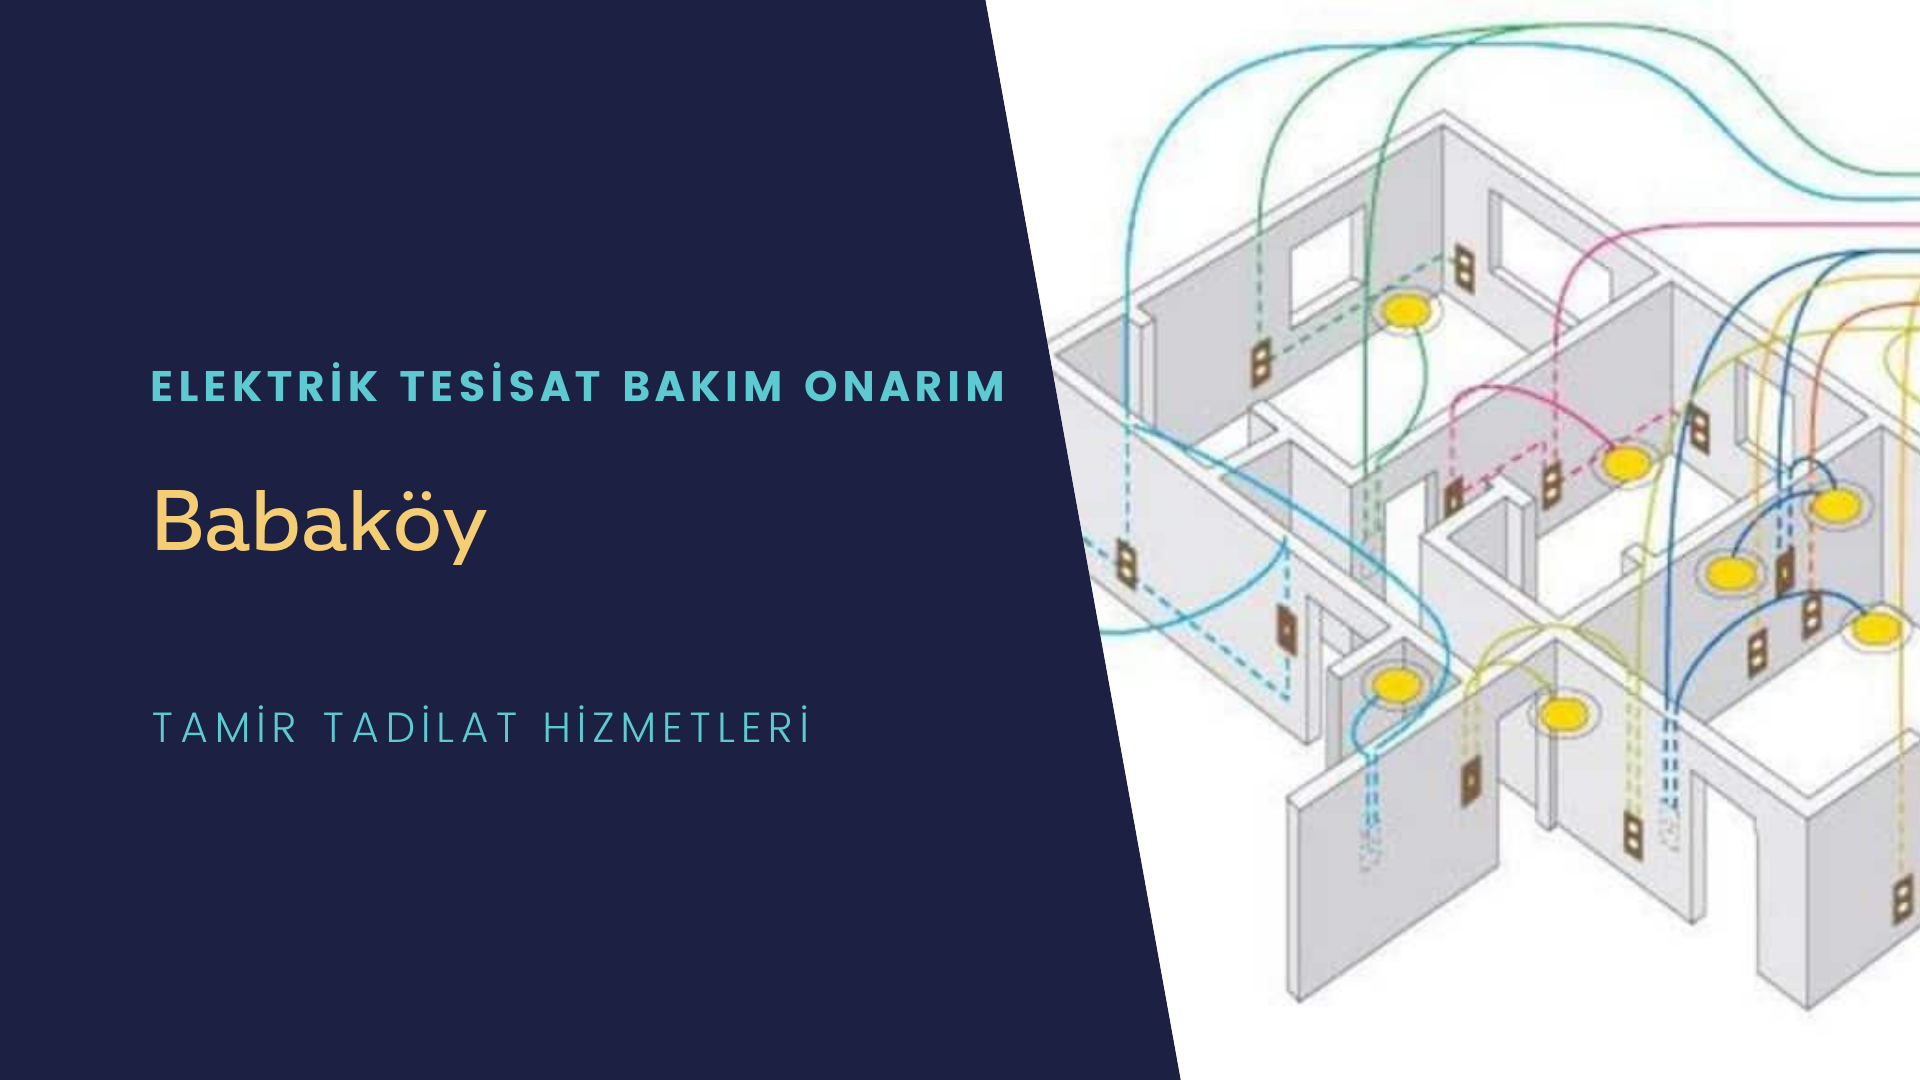 Babaköy'de elektrik tesisatı ustalarımı arıyorsunuz doğru adrestenizi Babaköy elektrik tesisatı ustalarımız 7/24 sizlere hizmet vermekten mutluluk duyar.